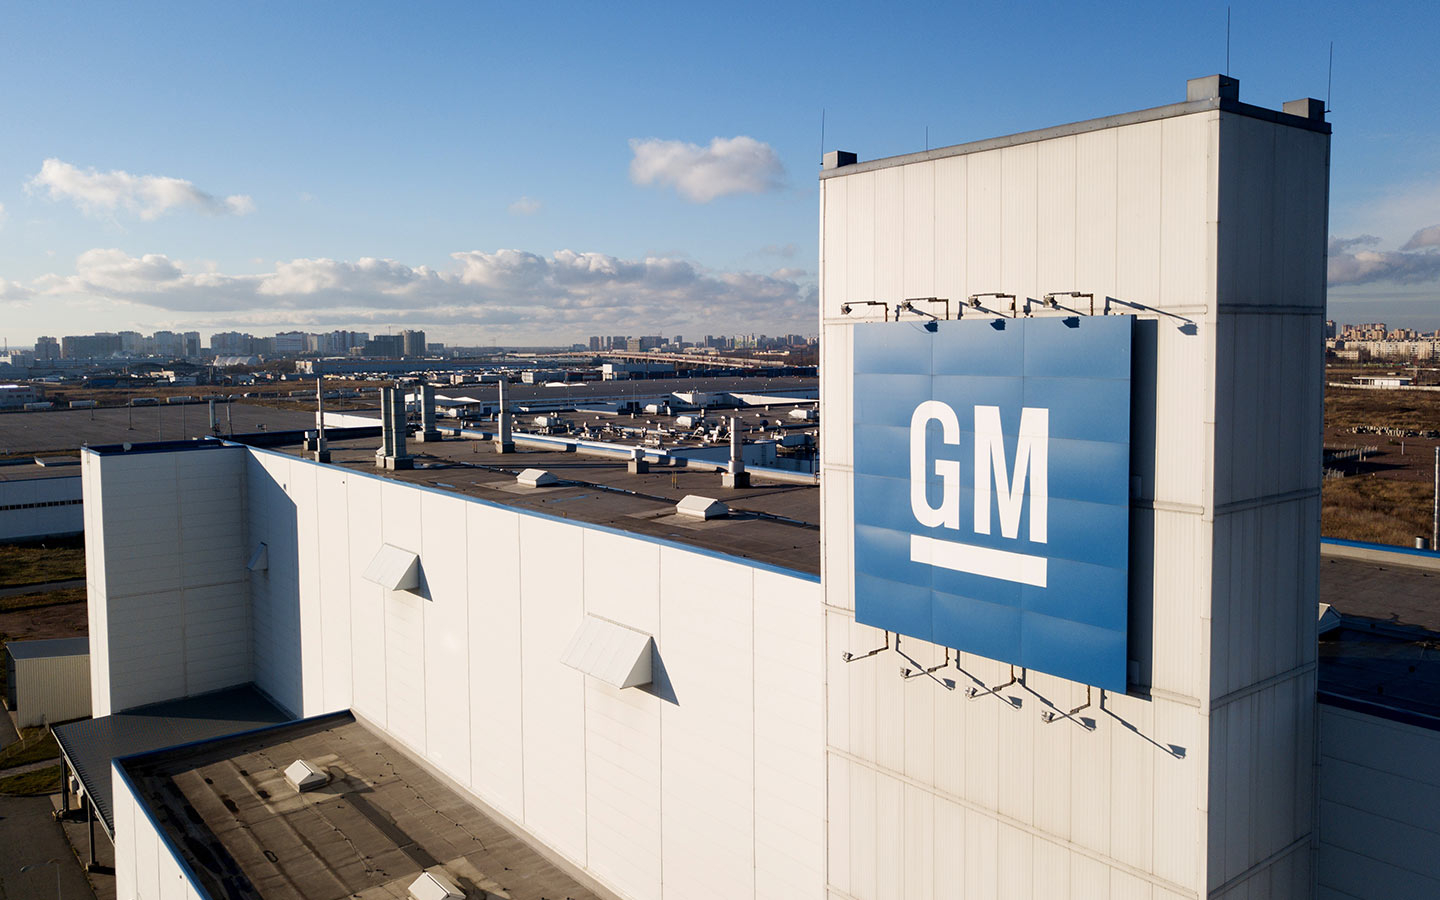 General Motors превратит два своих легендарных авто в электромобили